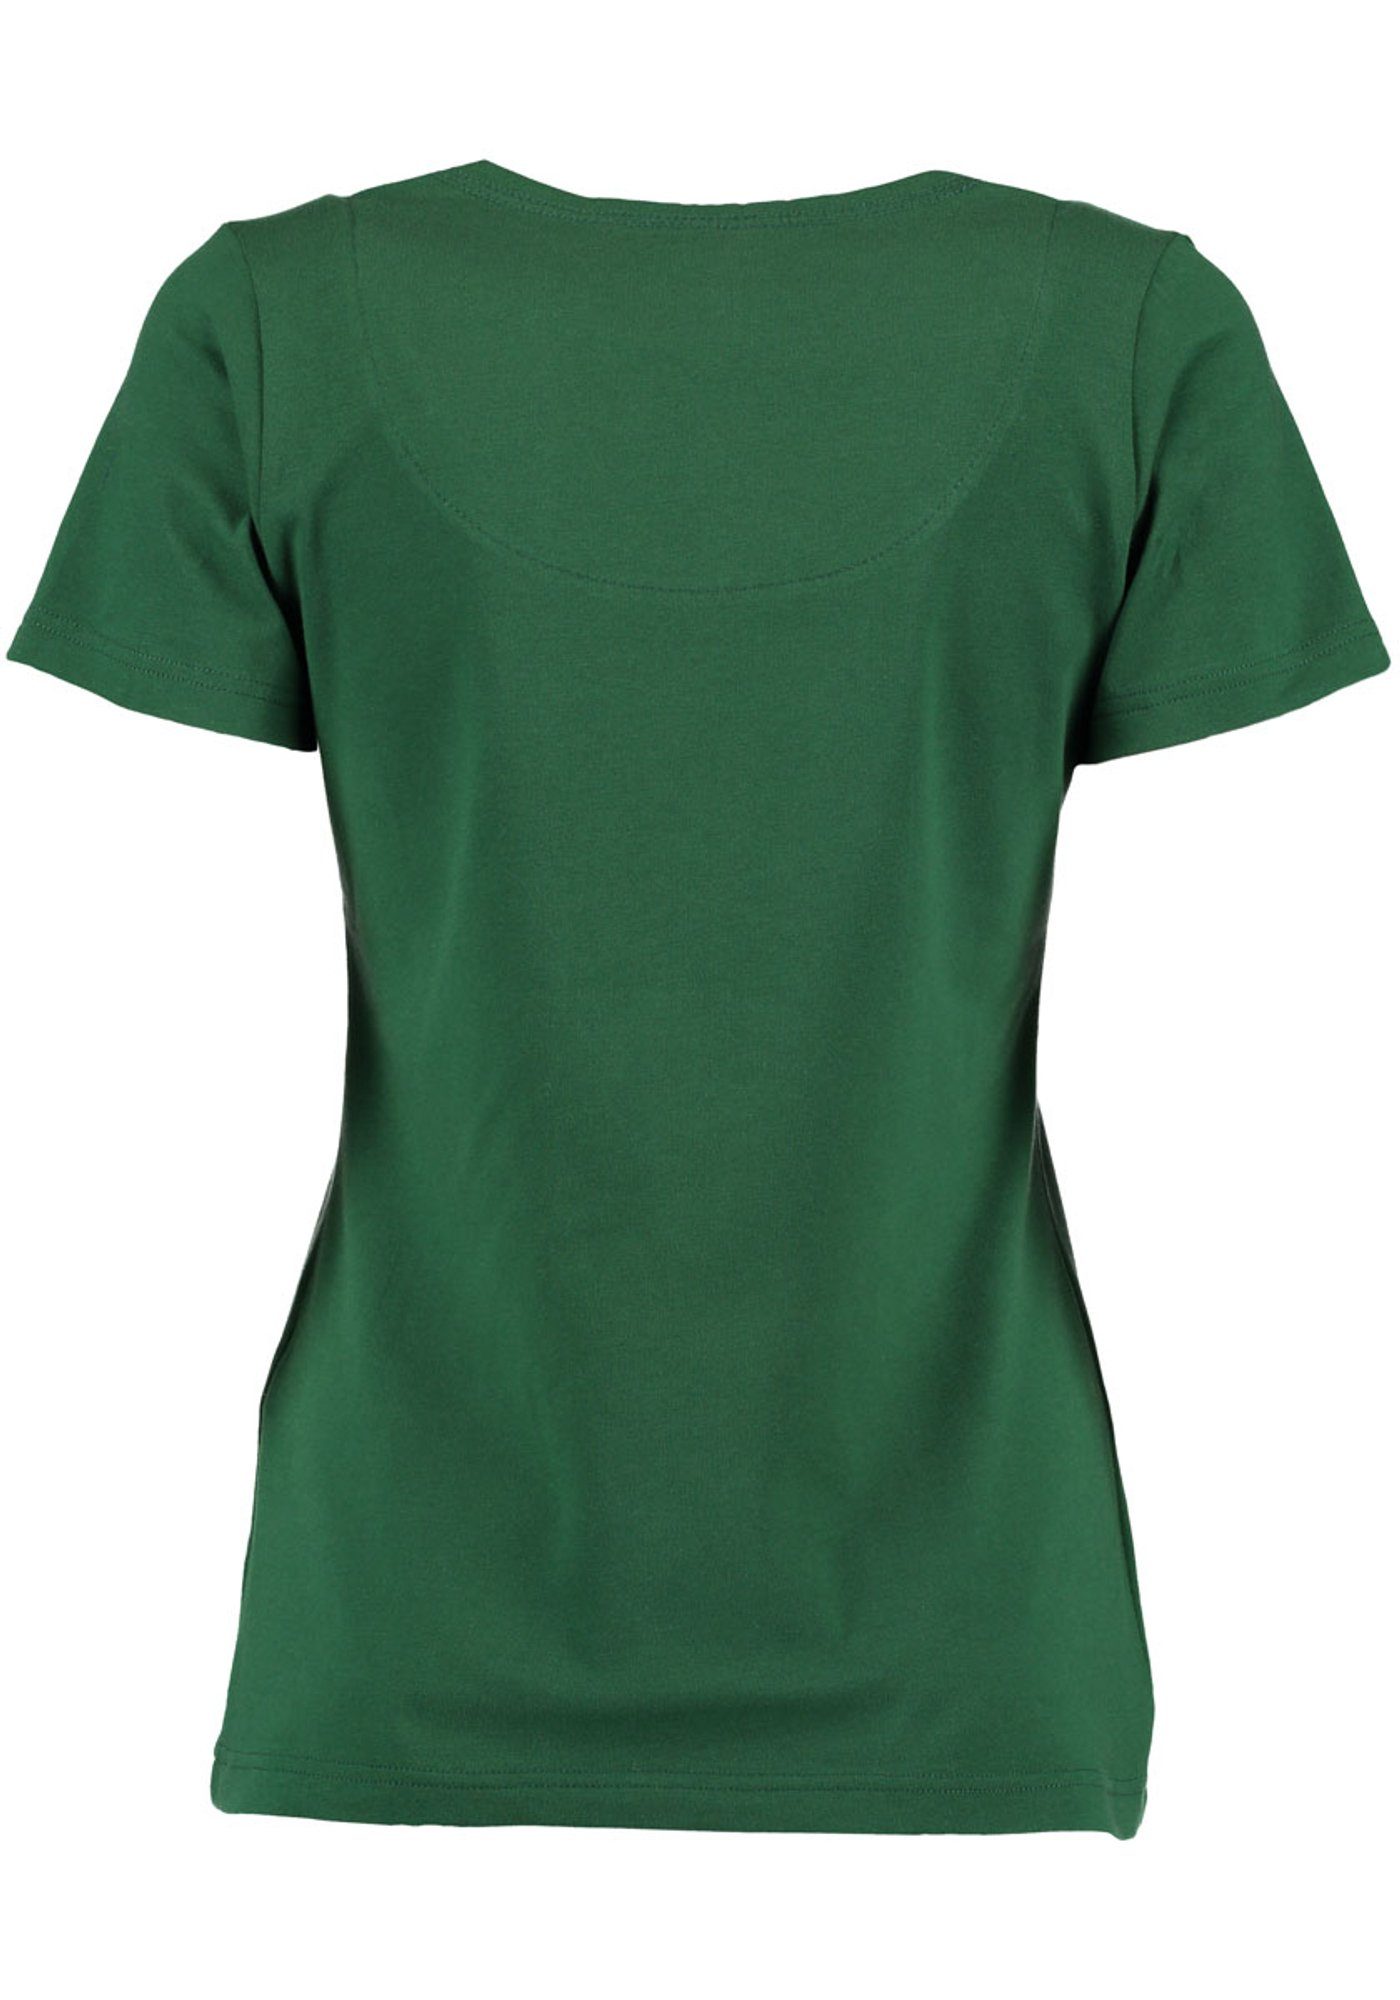 Brust Trachtenshirt trachtengrün Strass-Hirsch mit der auf Uginoy Kurzarm T-Shirt OS-Trachten